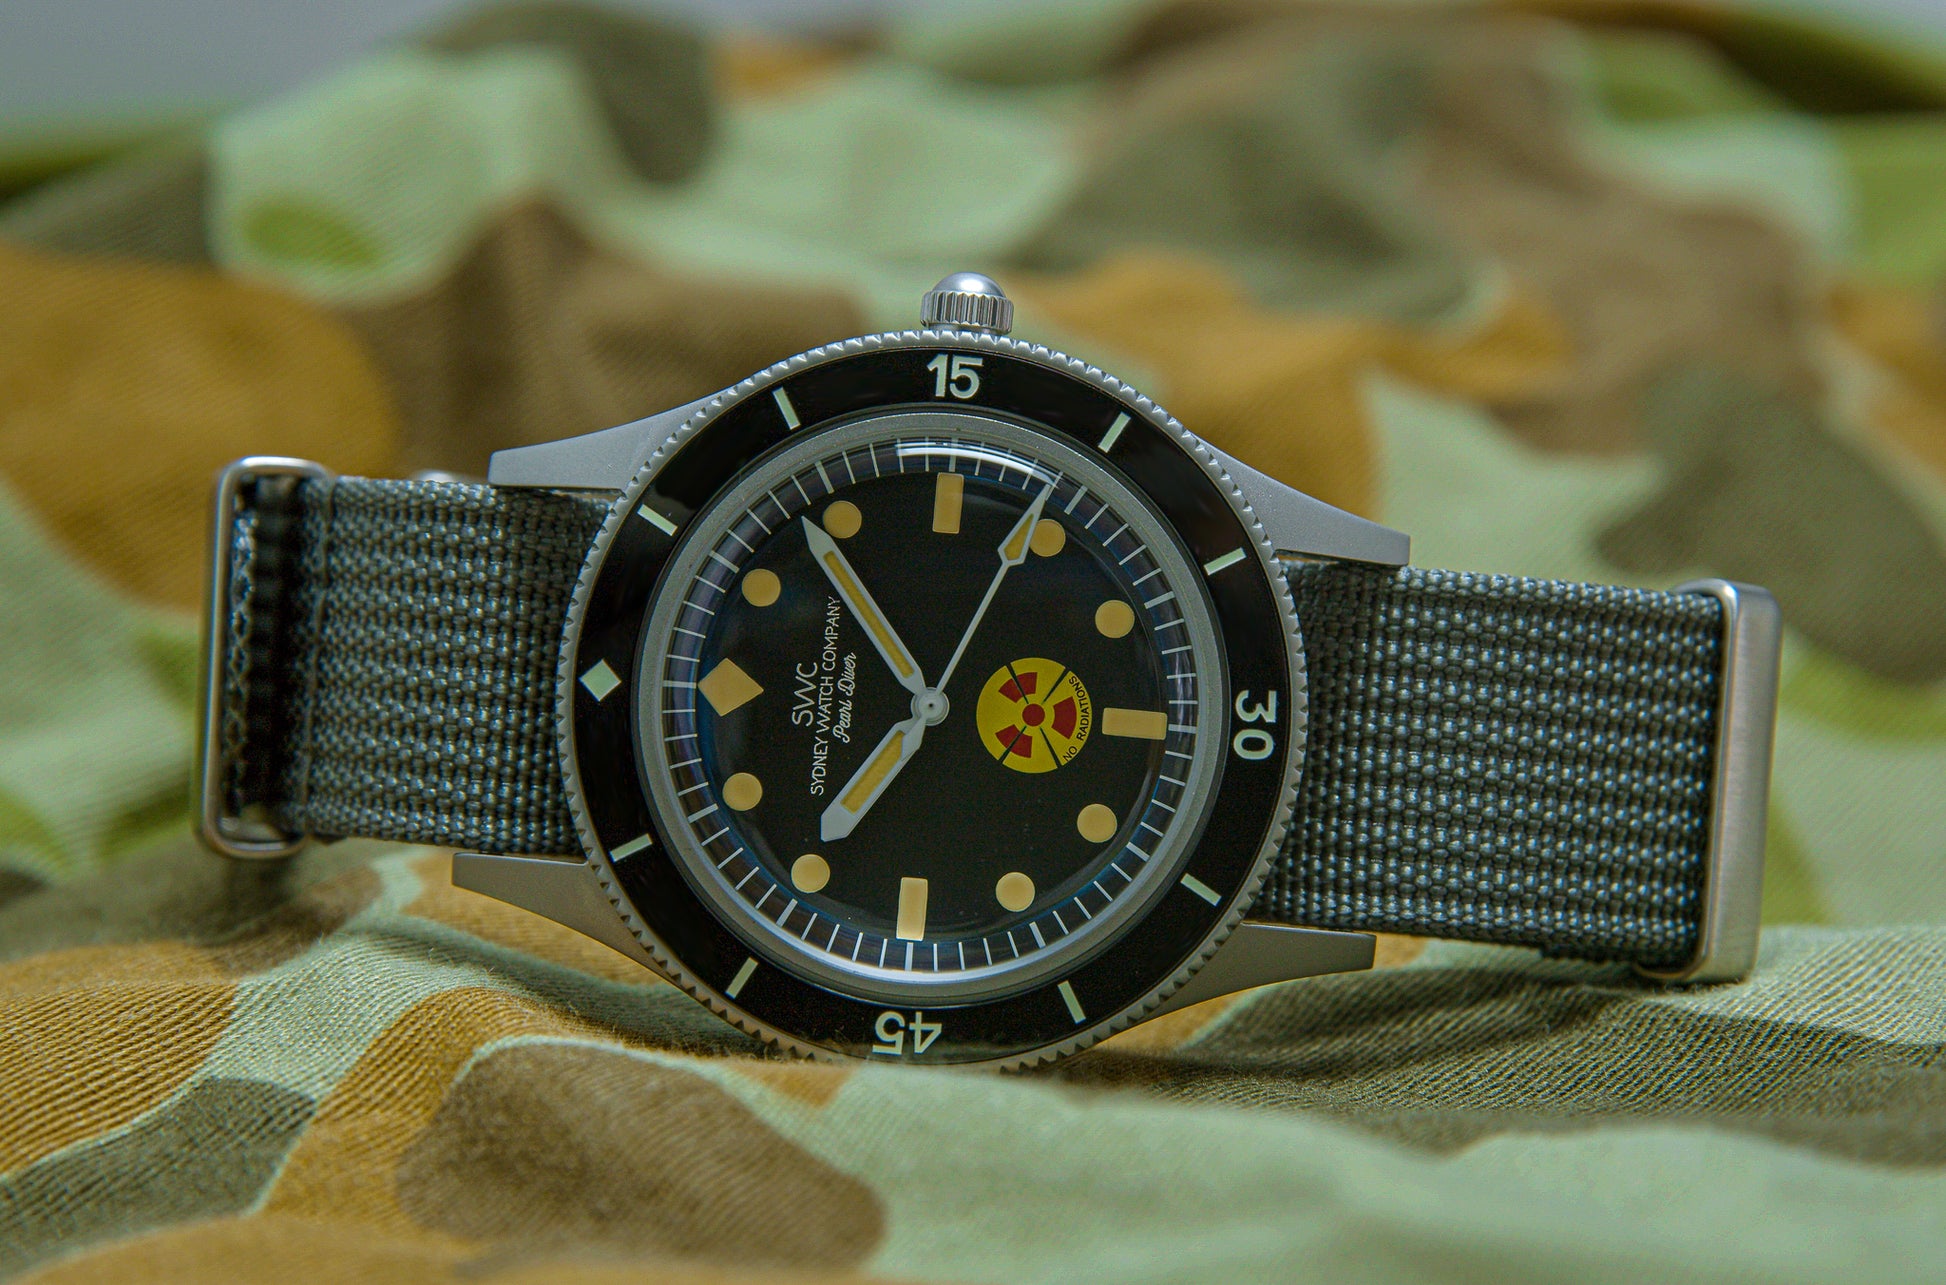 Custom Mod SWC Pearl Diver Milspec Watch by Kool Mods